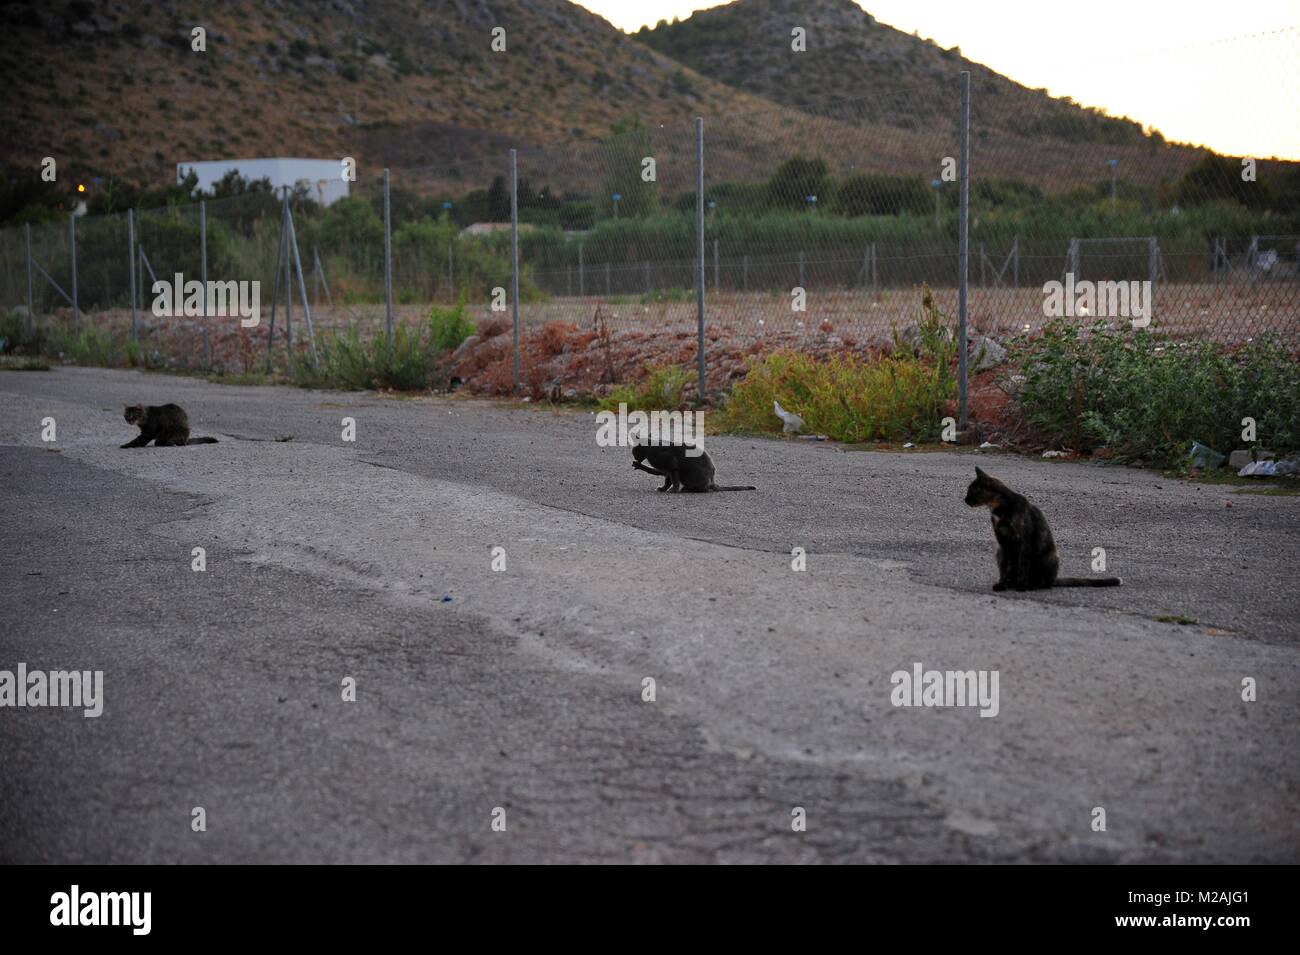 3 gatos salvajes que viven en el basurero en frente de una montaña mostrar el lado oscuro del turismo en la costa mediterránea Foto de stock